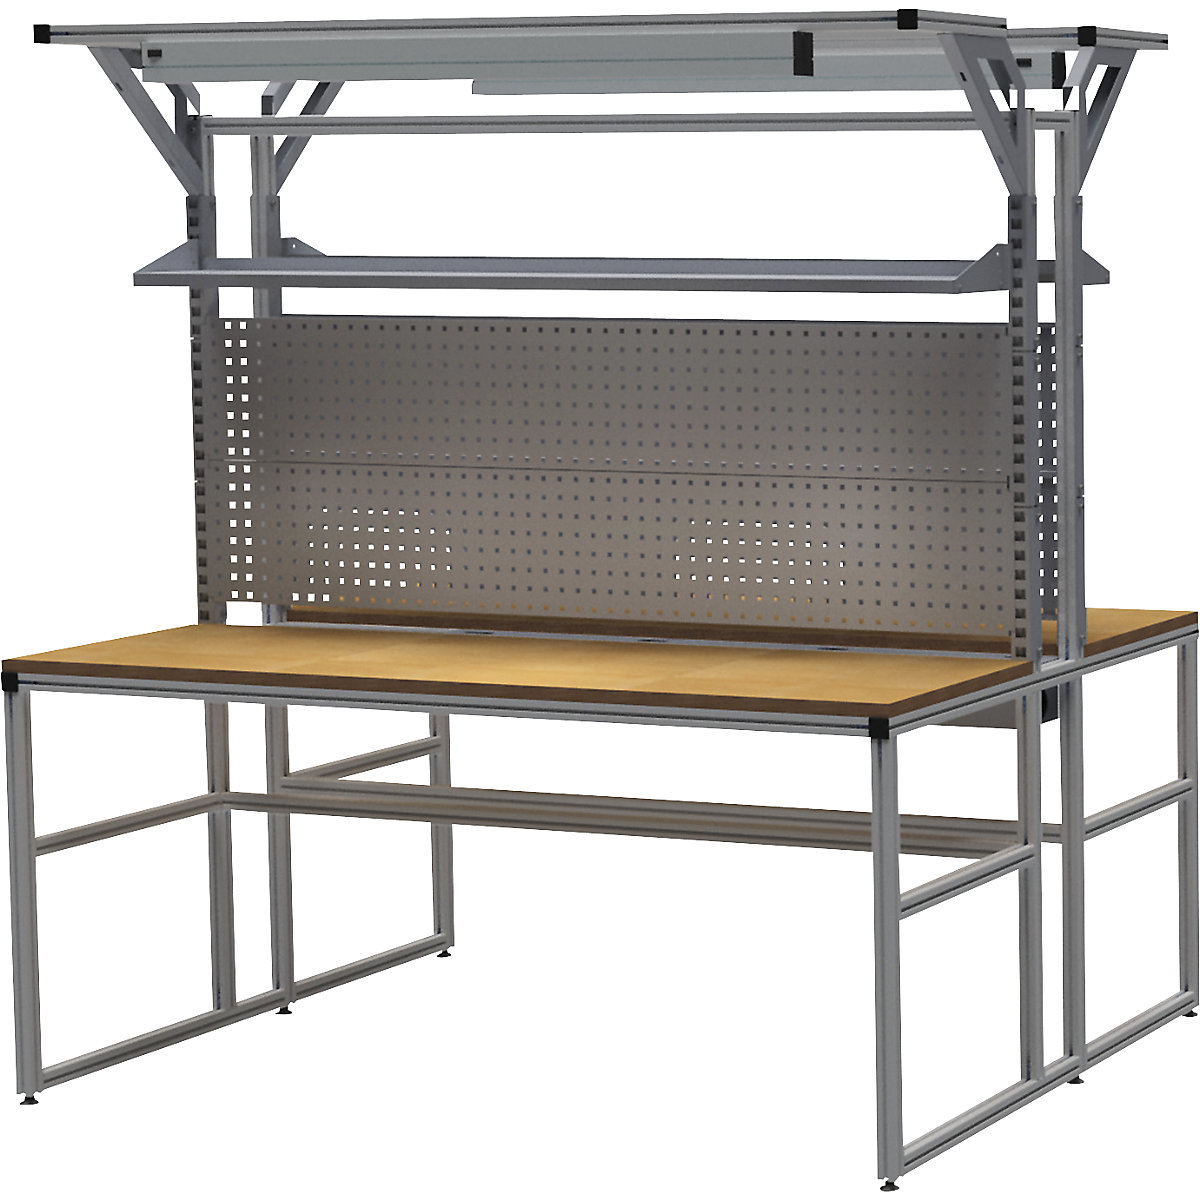 Hliníkový pracovní stůl workalu® se systémovou konstrukcí, oboustranný – bedrunka hirth